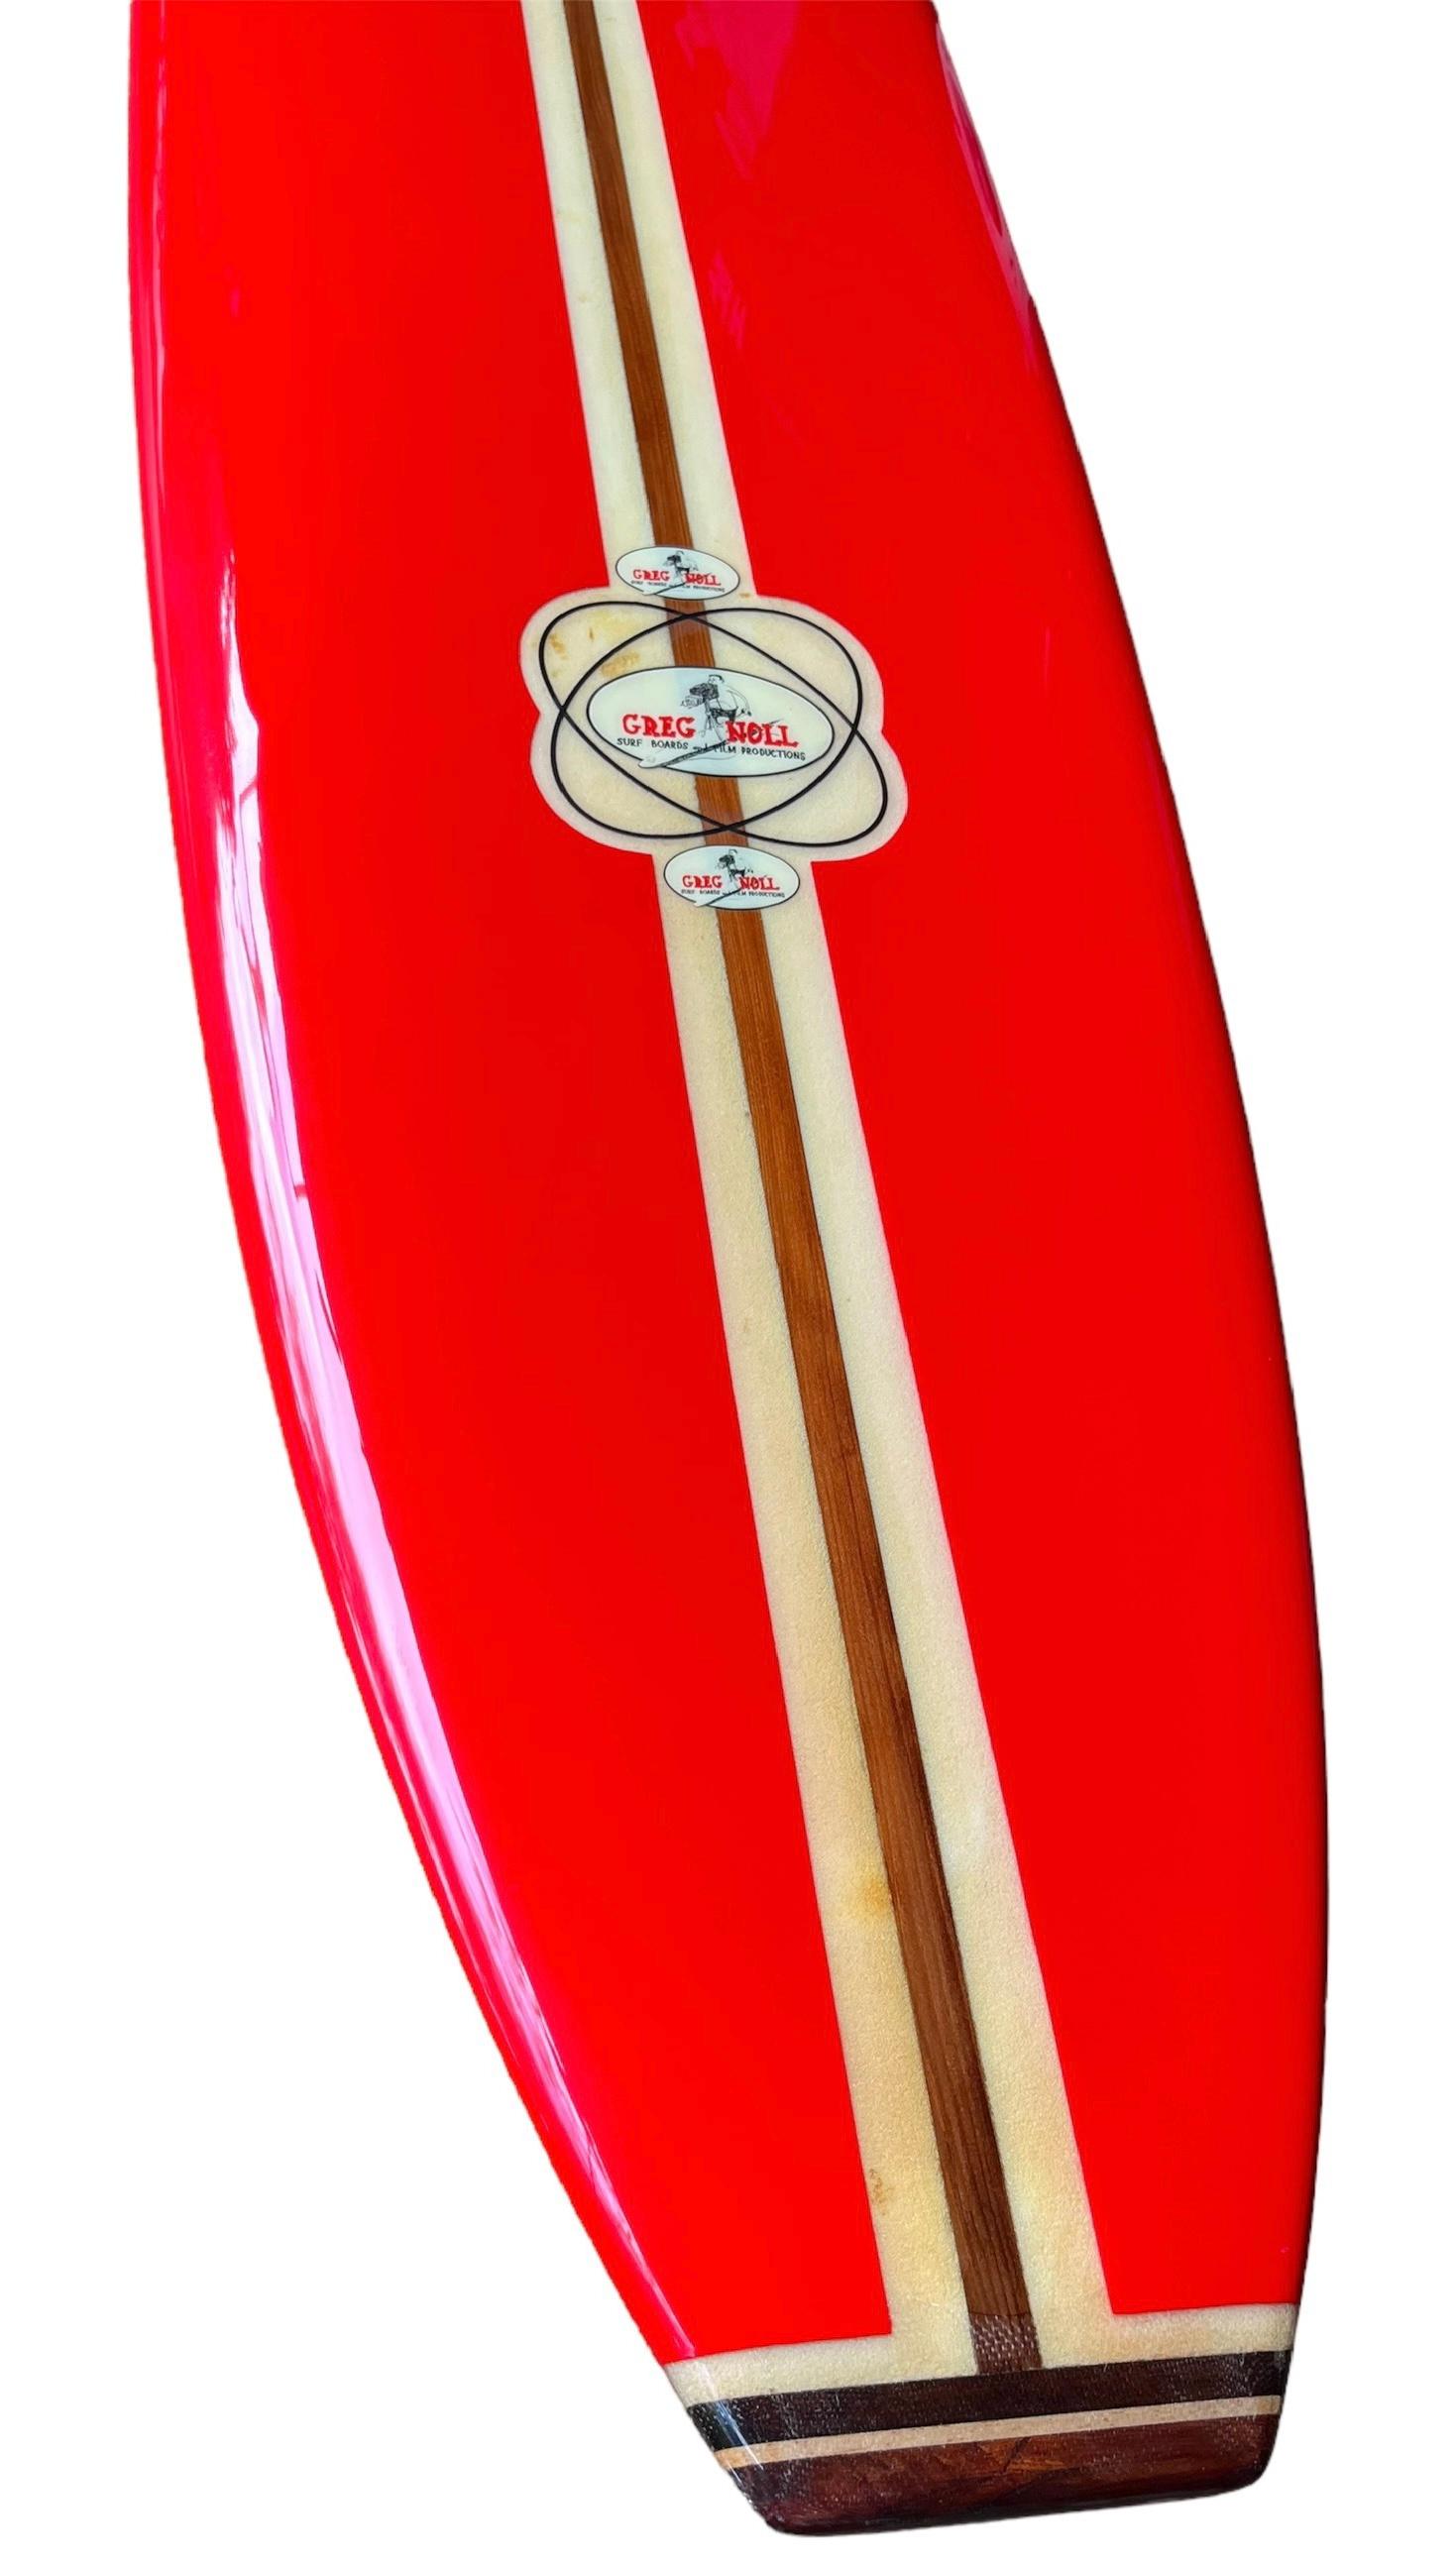 Mid-20th Century 1960s Vintage Greg Noll Custom Longboard 